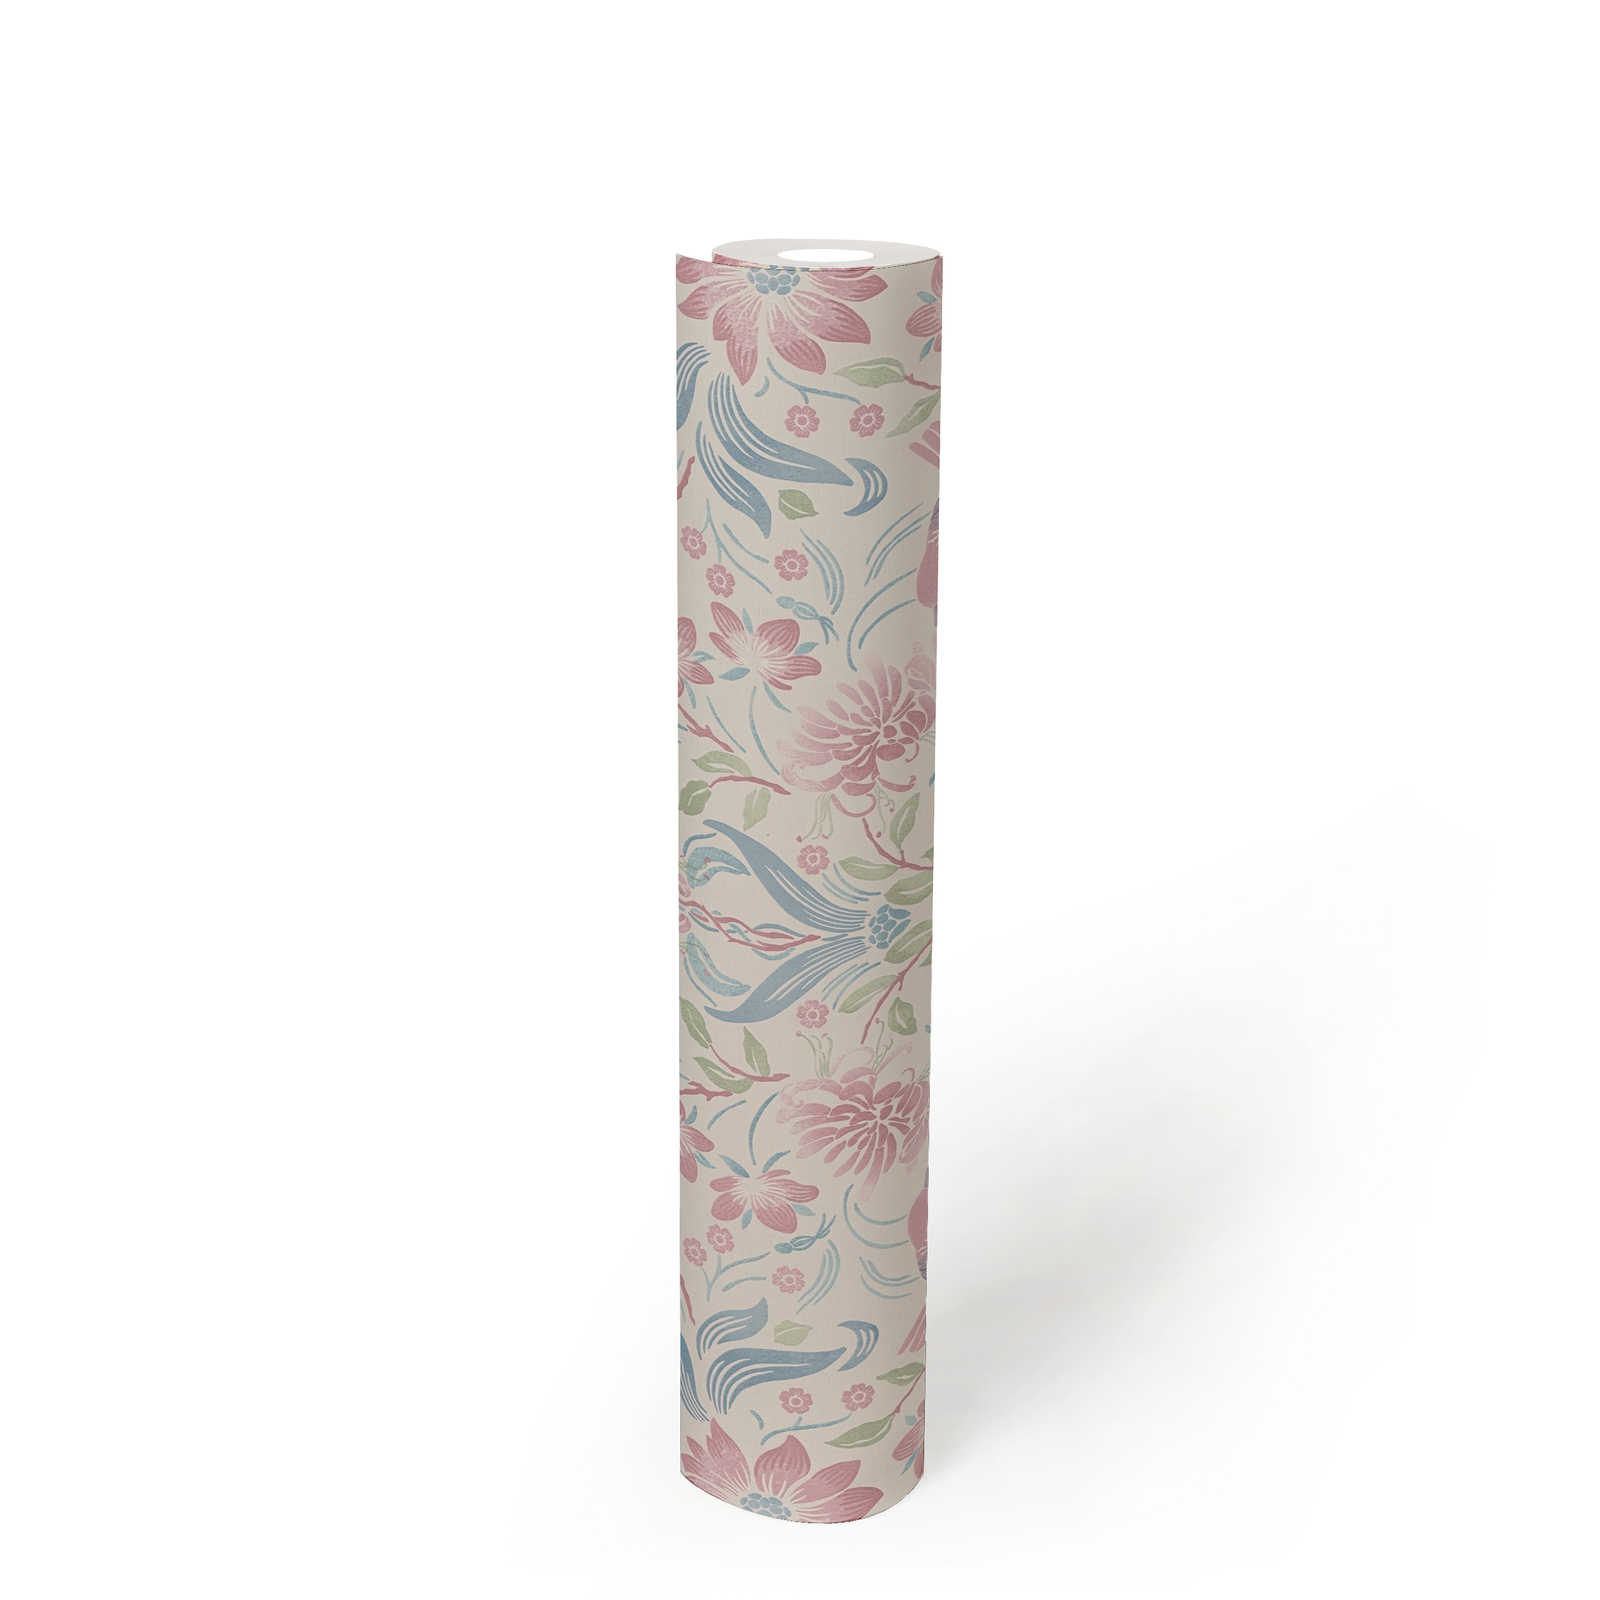             Papel pintado con motivos florales y pájaros - crema, azul, rosa
        